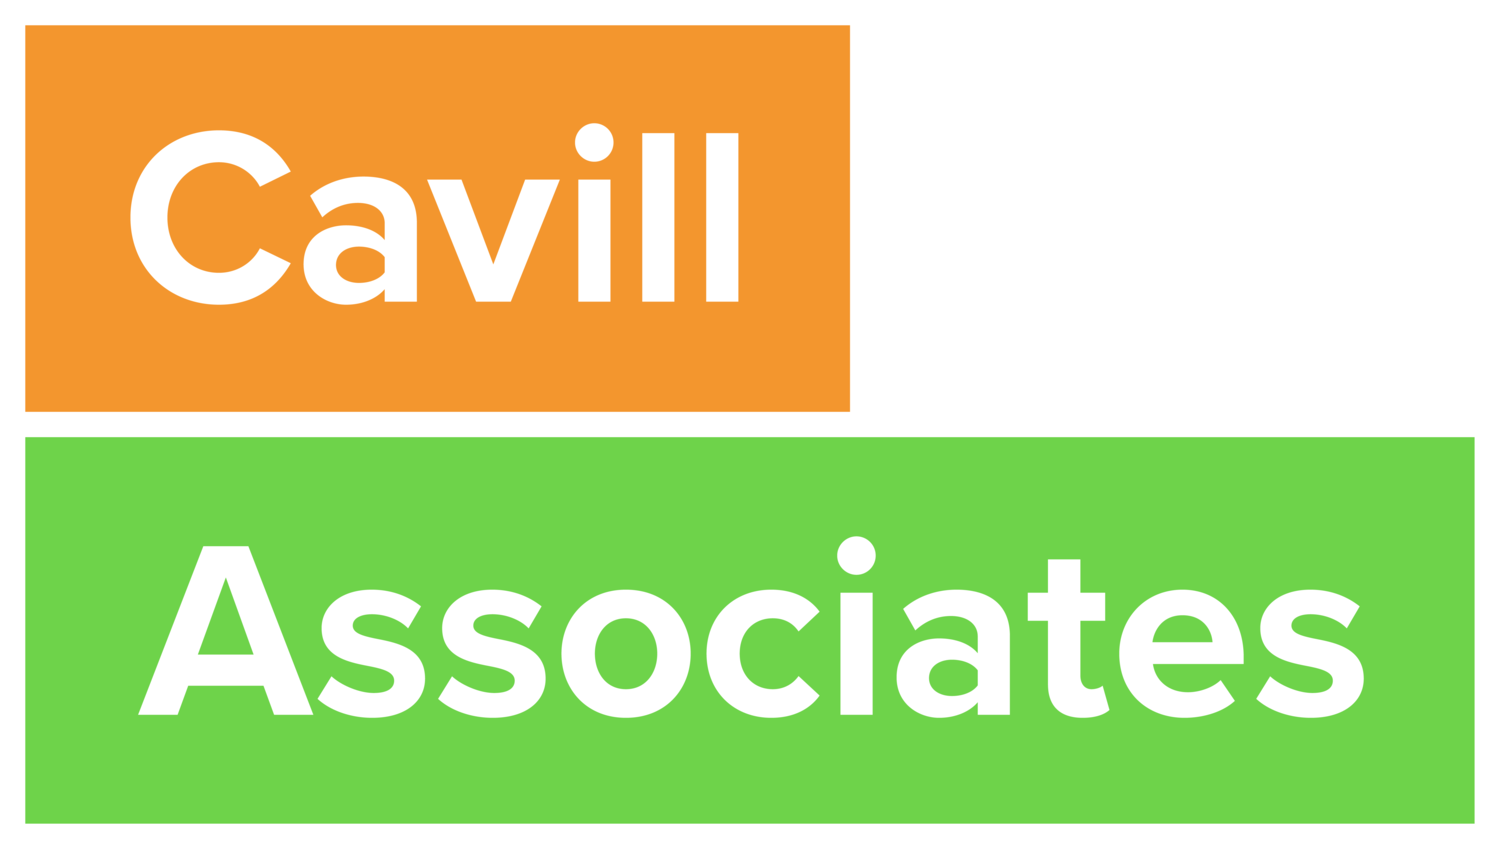 Cavill Associates